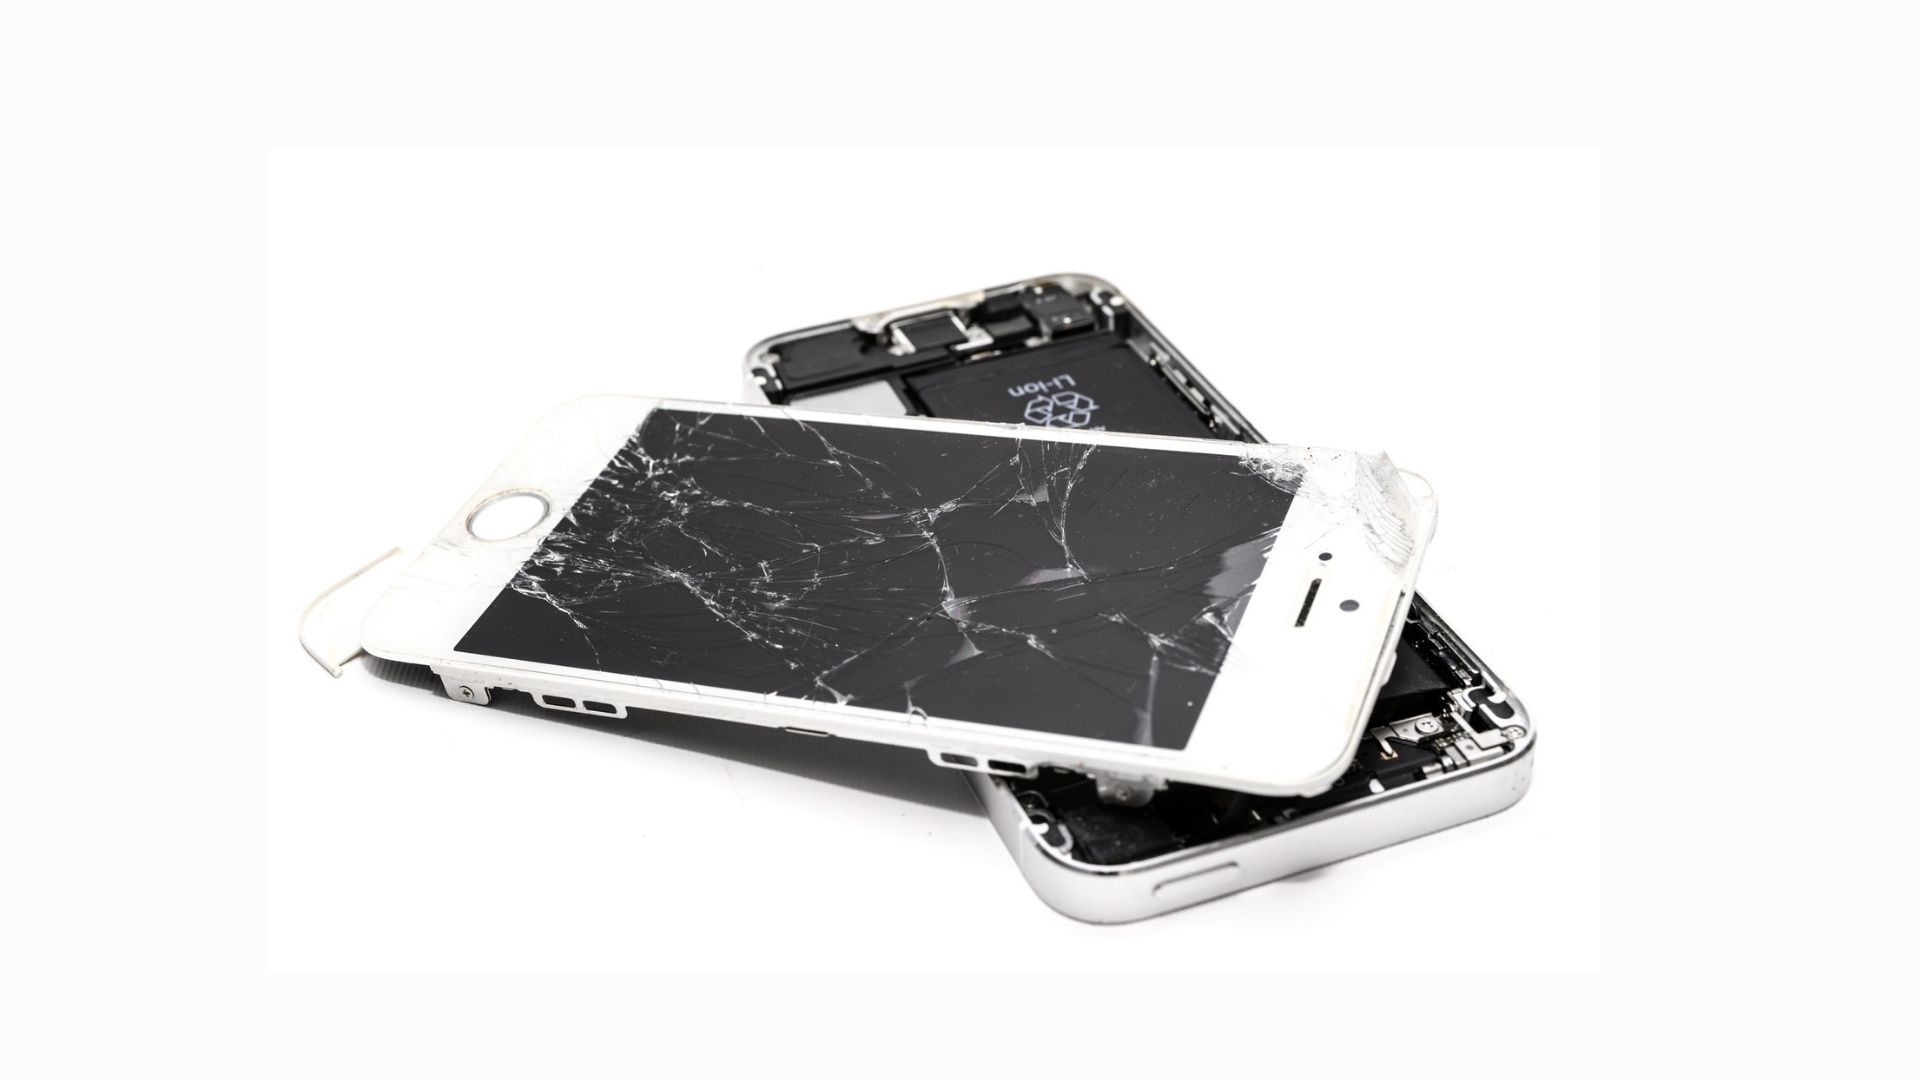 Afinal, o que o seguro de celular cobre? Fonte: Pexels.